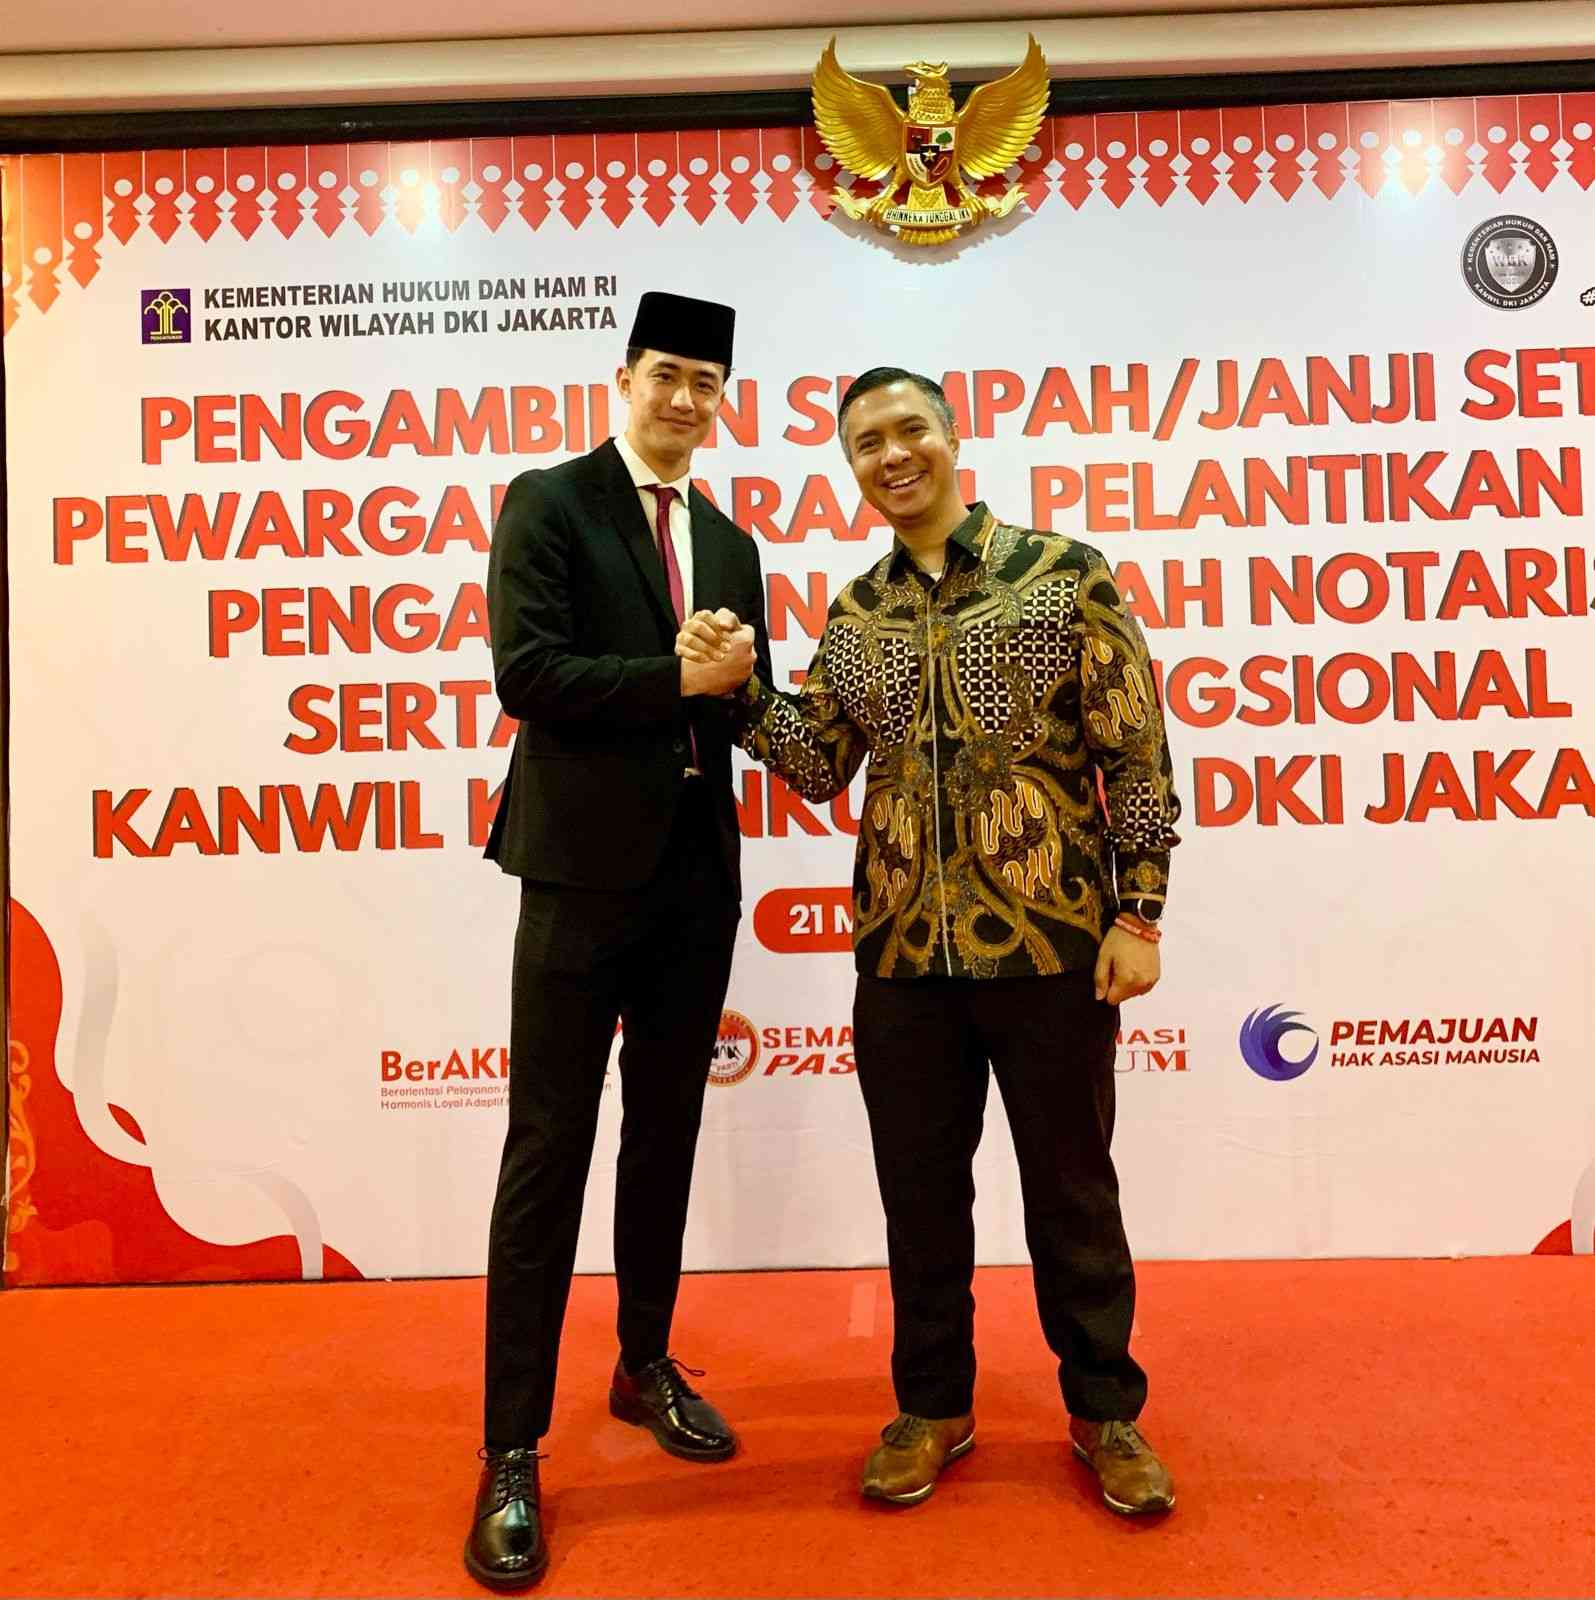 Cyrus Margono Kembali Memperoleh Kewarganegaraan Indonesia, Hamdan Hamedan: Inovasi Terbaru dalam Hukum tentang Anak dengan Kewarganegaraan Ganda